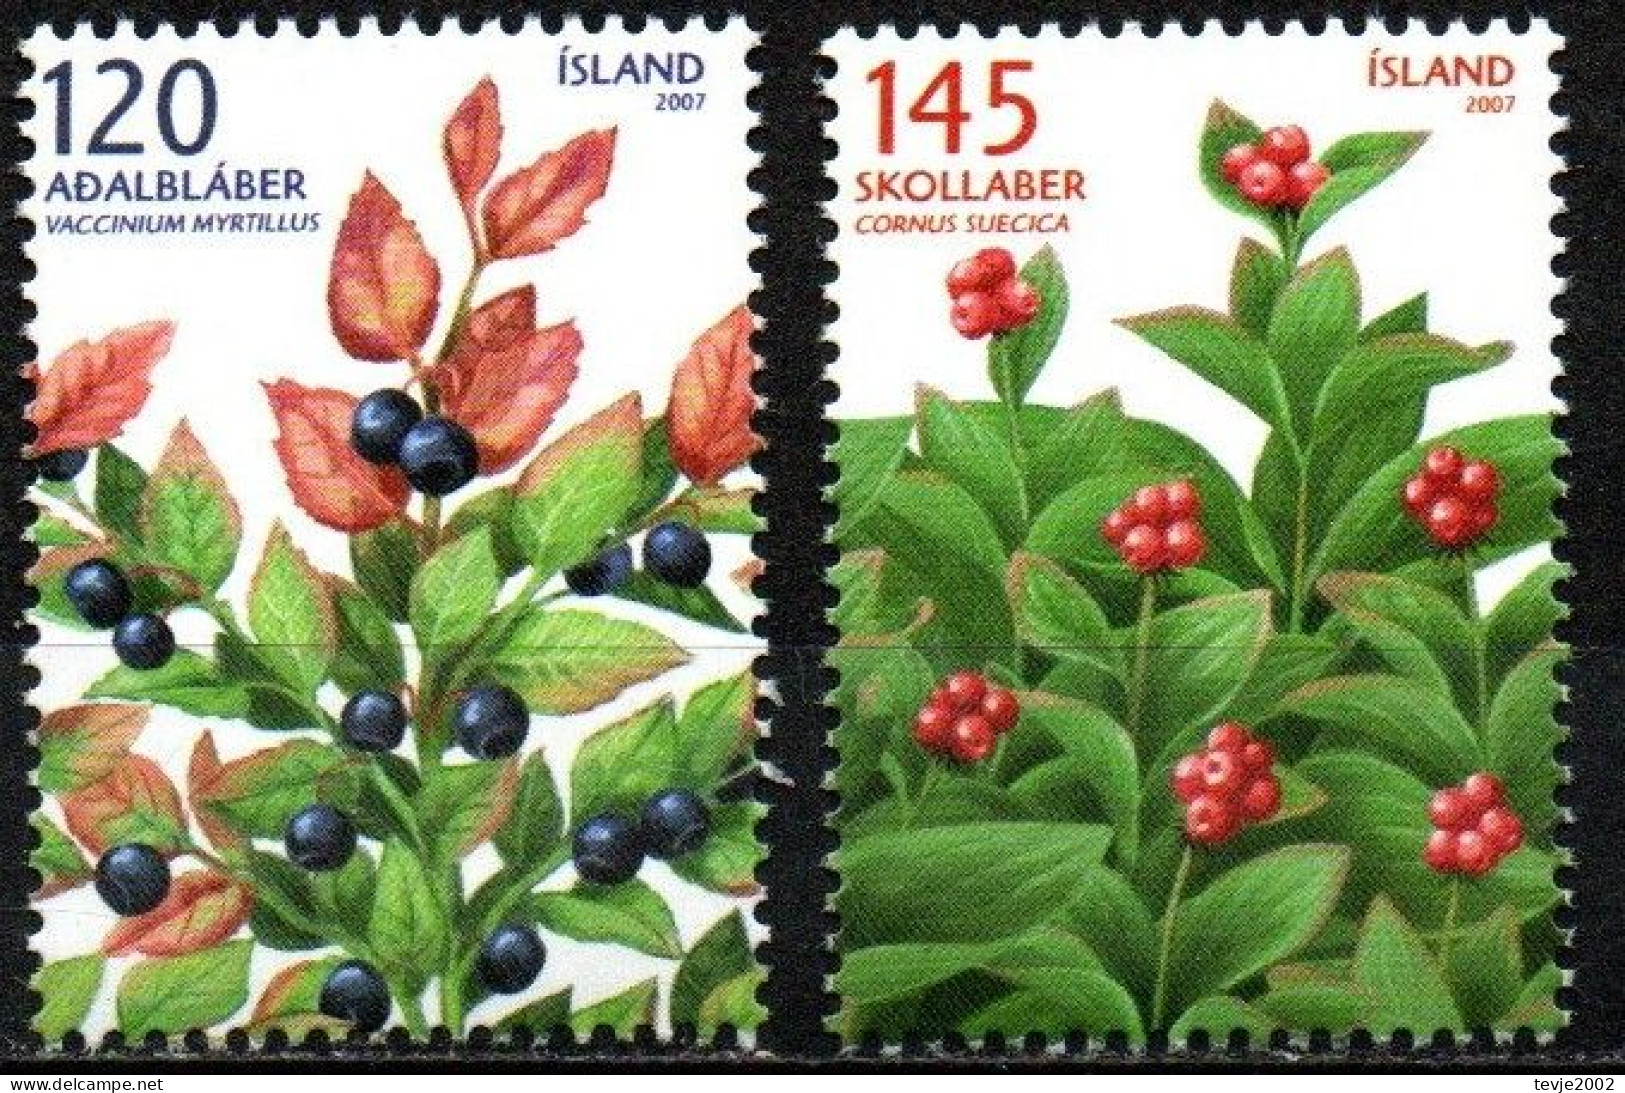 Island 2007 - Mi.Nr. 1175 - 1176 - Postfrisch MNH - Früchte Obst Beeren Berries - Fruits